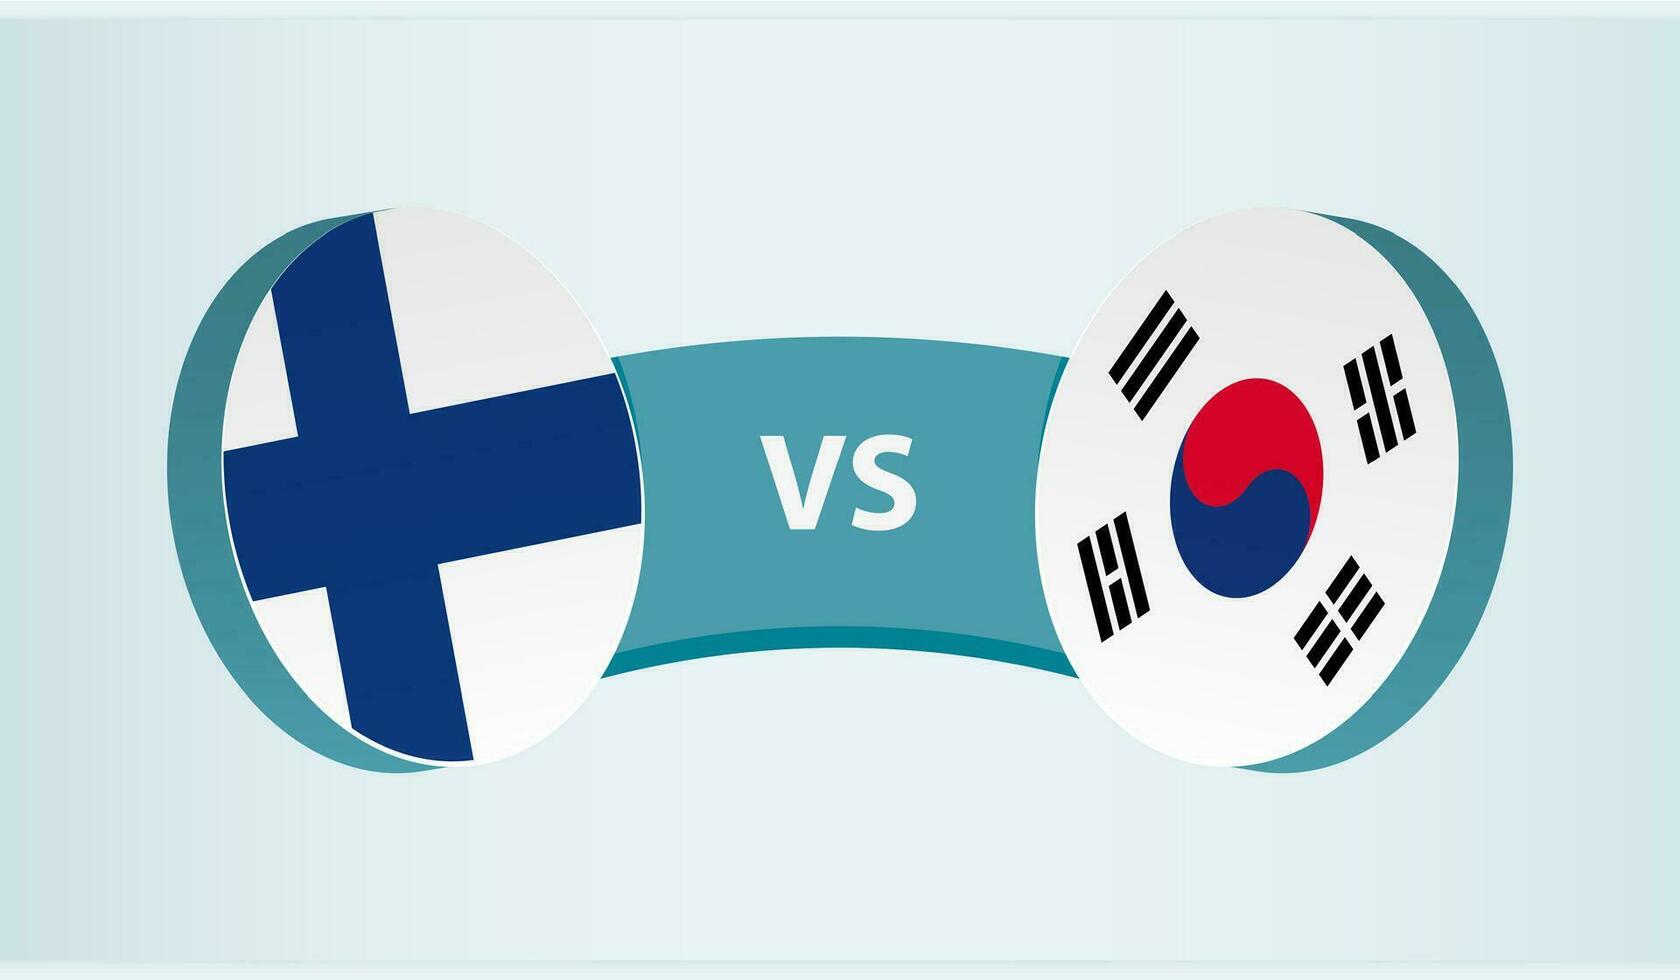 finland mot söder korea, team sporter konkurrens begrepp. vektor